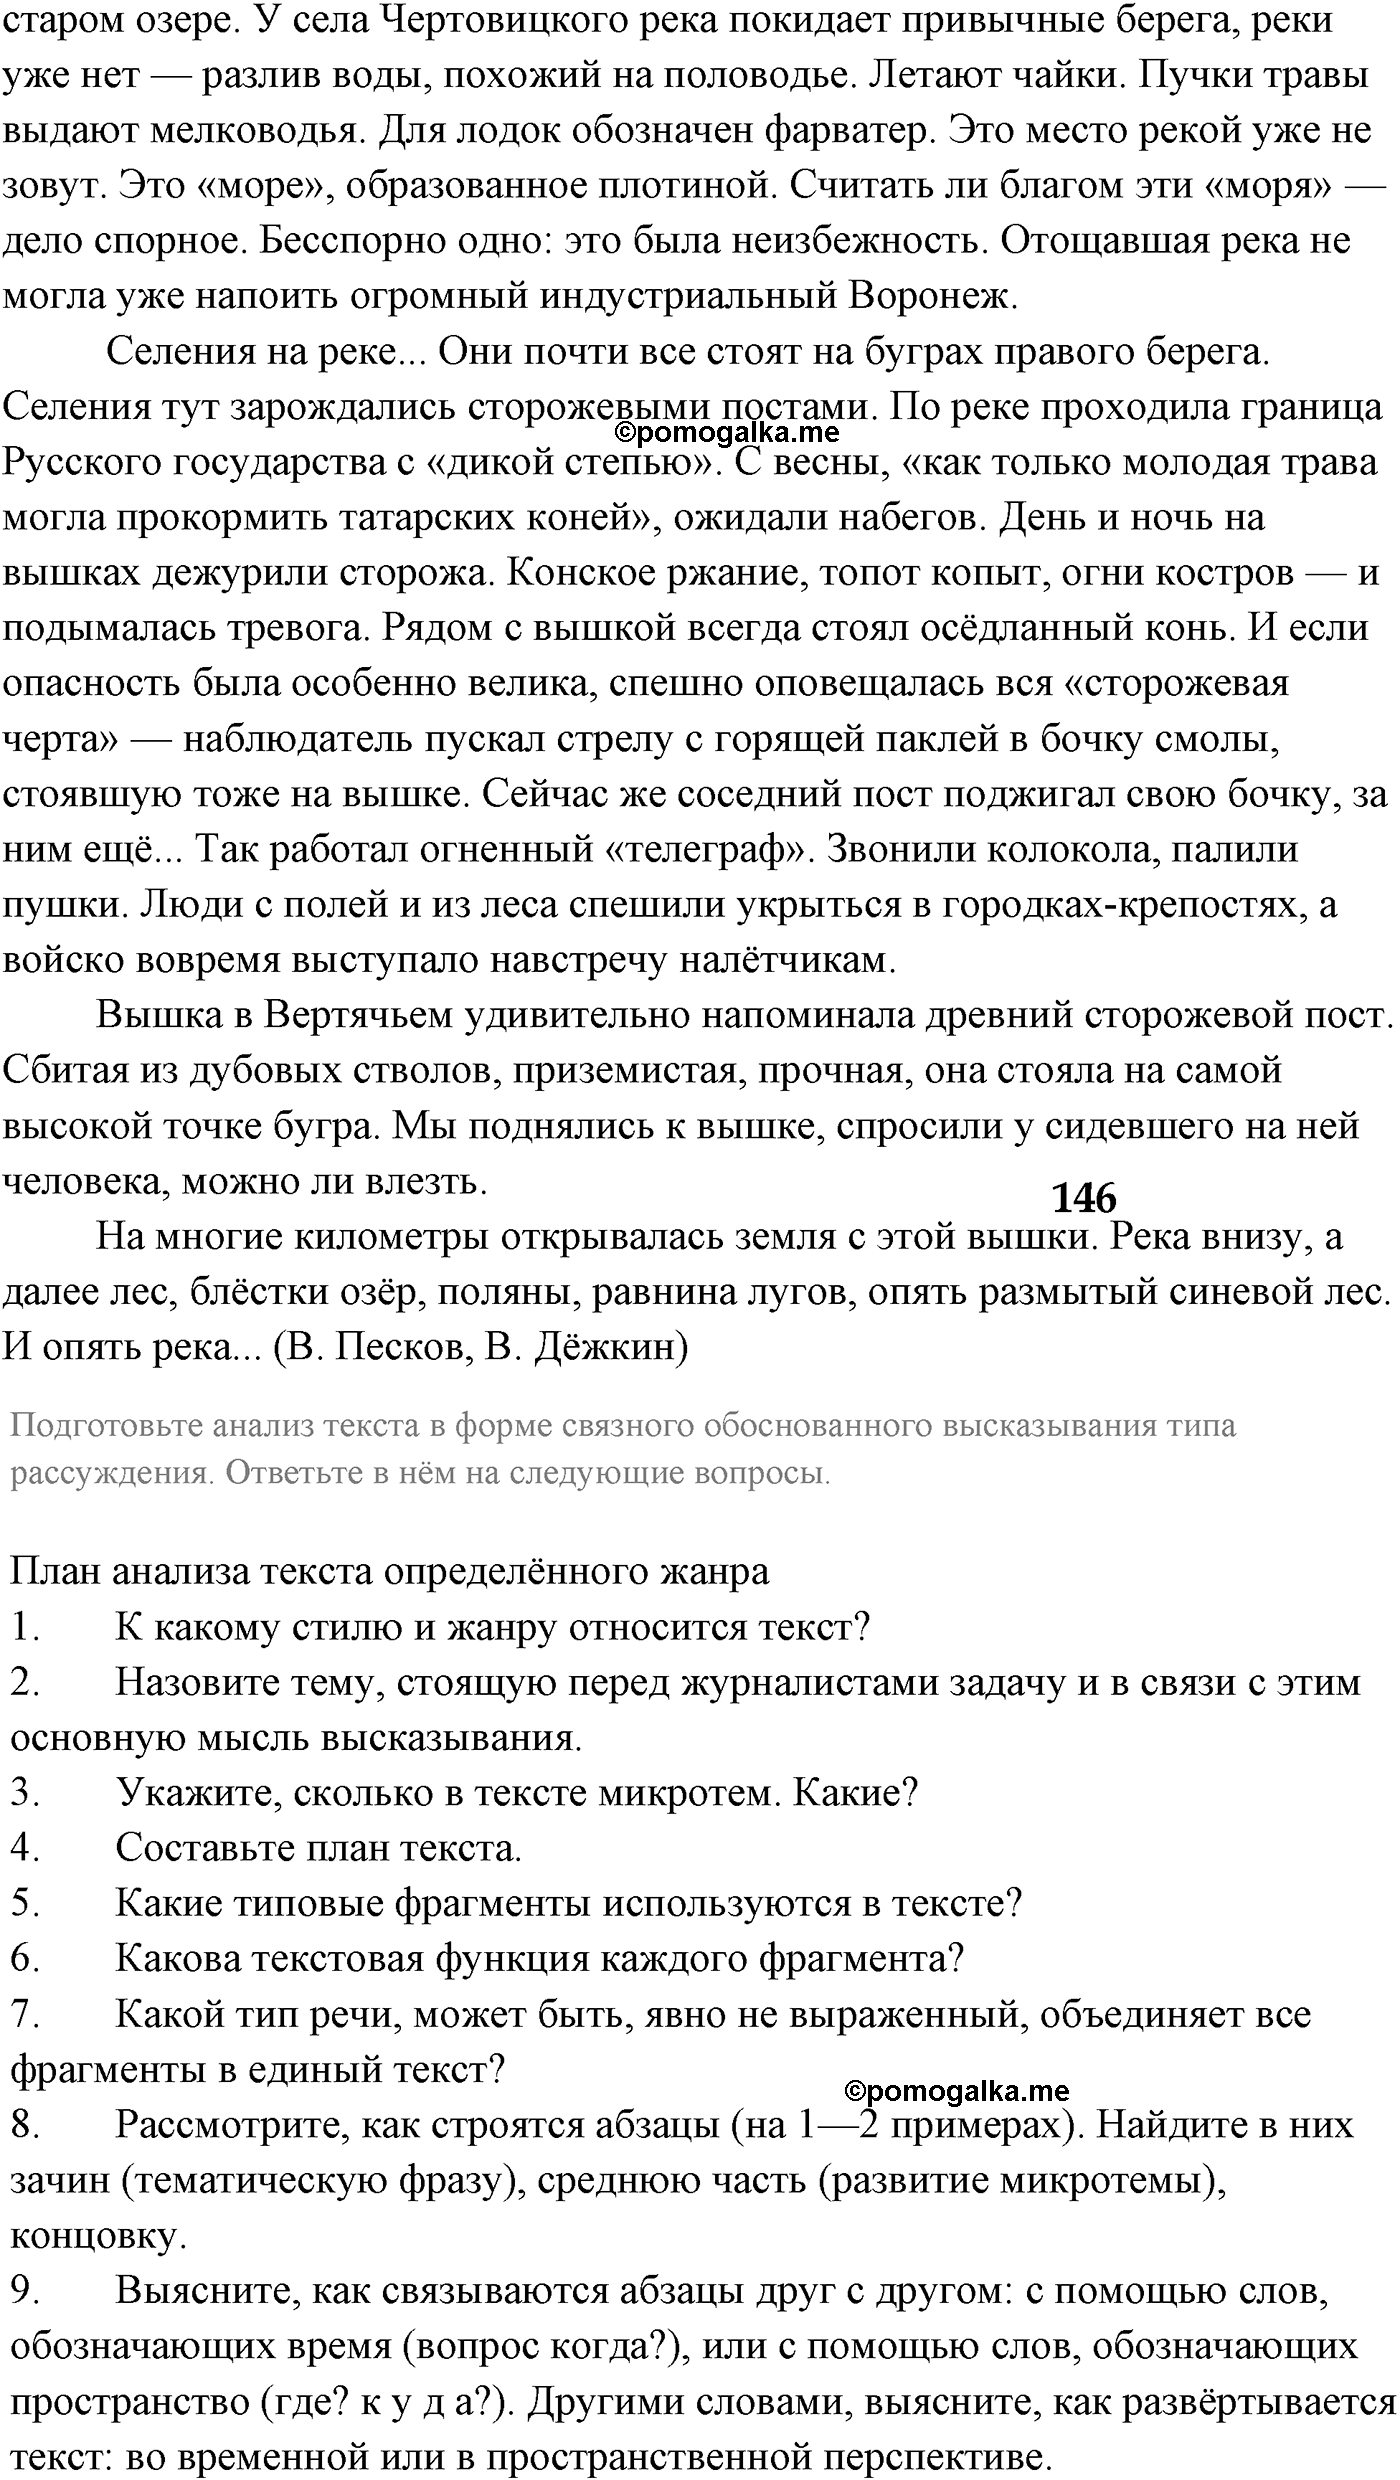 страница 132 номер 187 русский язык 9 класс Разумовская 2011 год